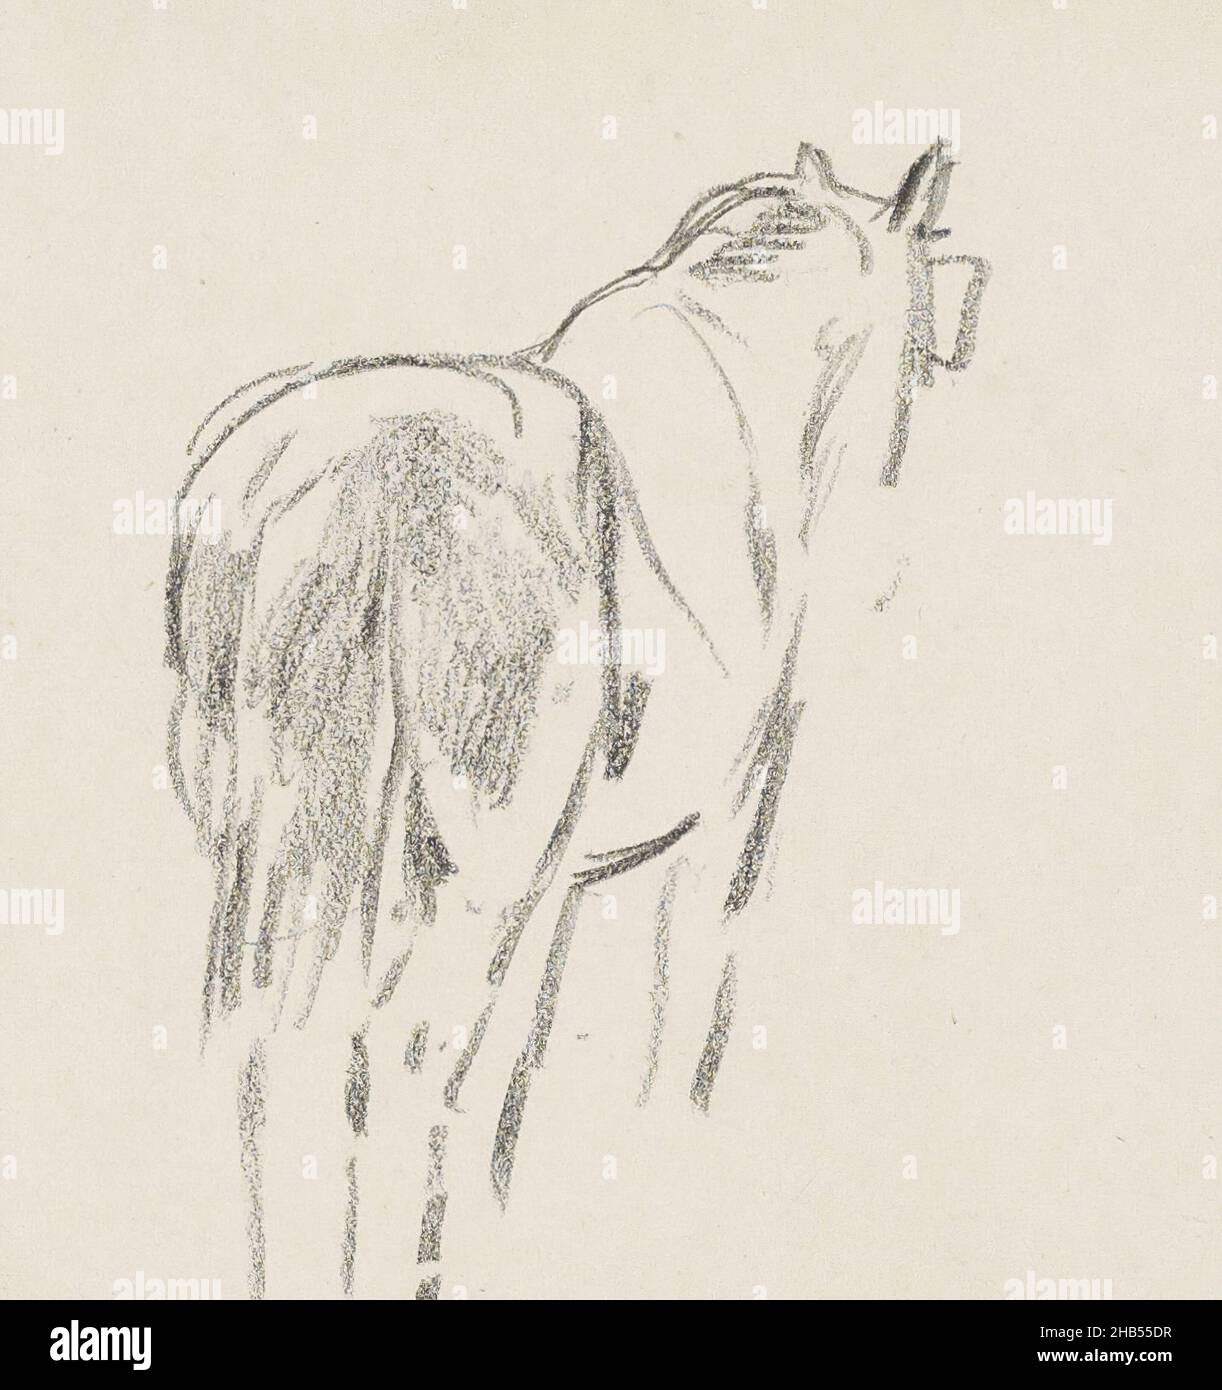 Blatt 10 Recto aus einem Skizzenbuch mit 41 Seiten, gesattelte Pferde, Anton Mauve, 1848 - 1888 Stockfoto